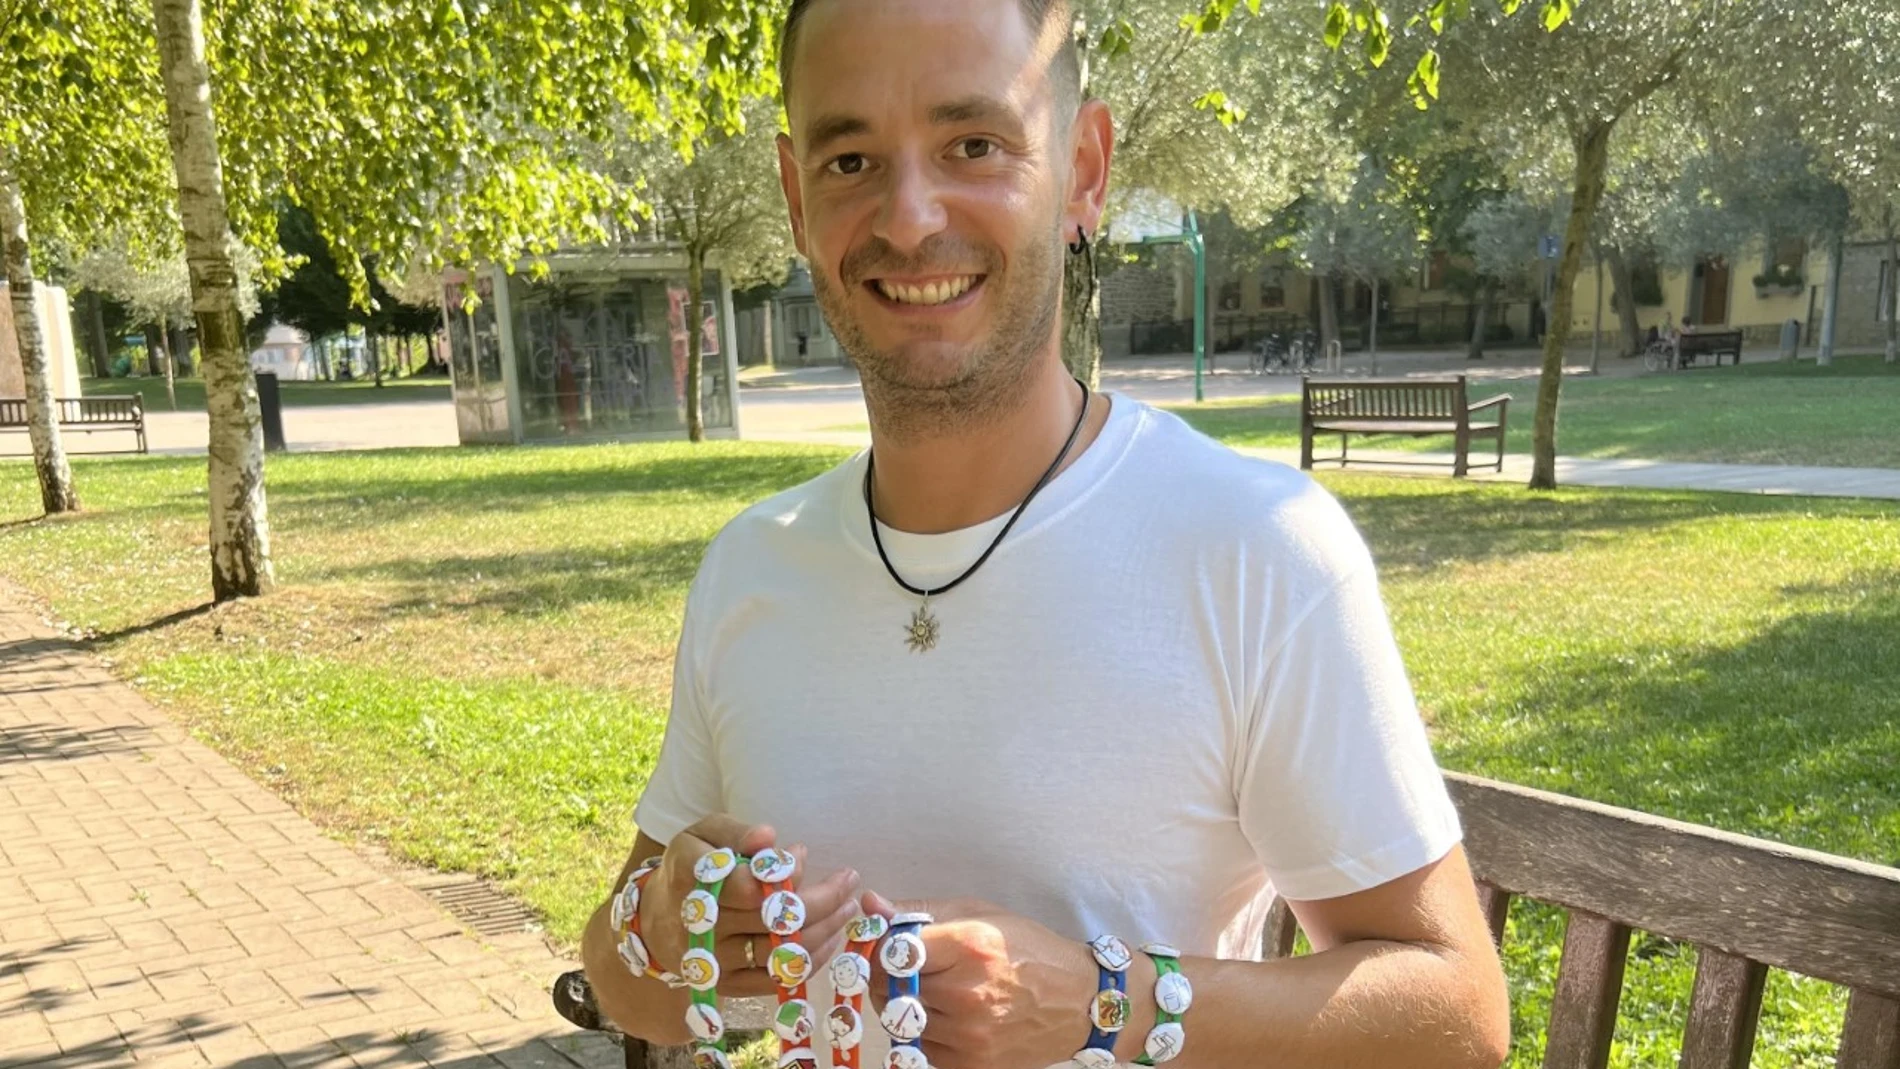 Jaime Brea, profesor del colegio Niño Jesús de Vitoria, posa con las pulseras que ha patentado